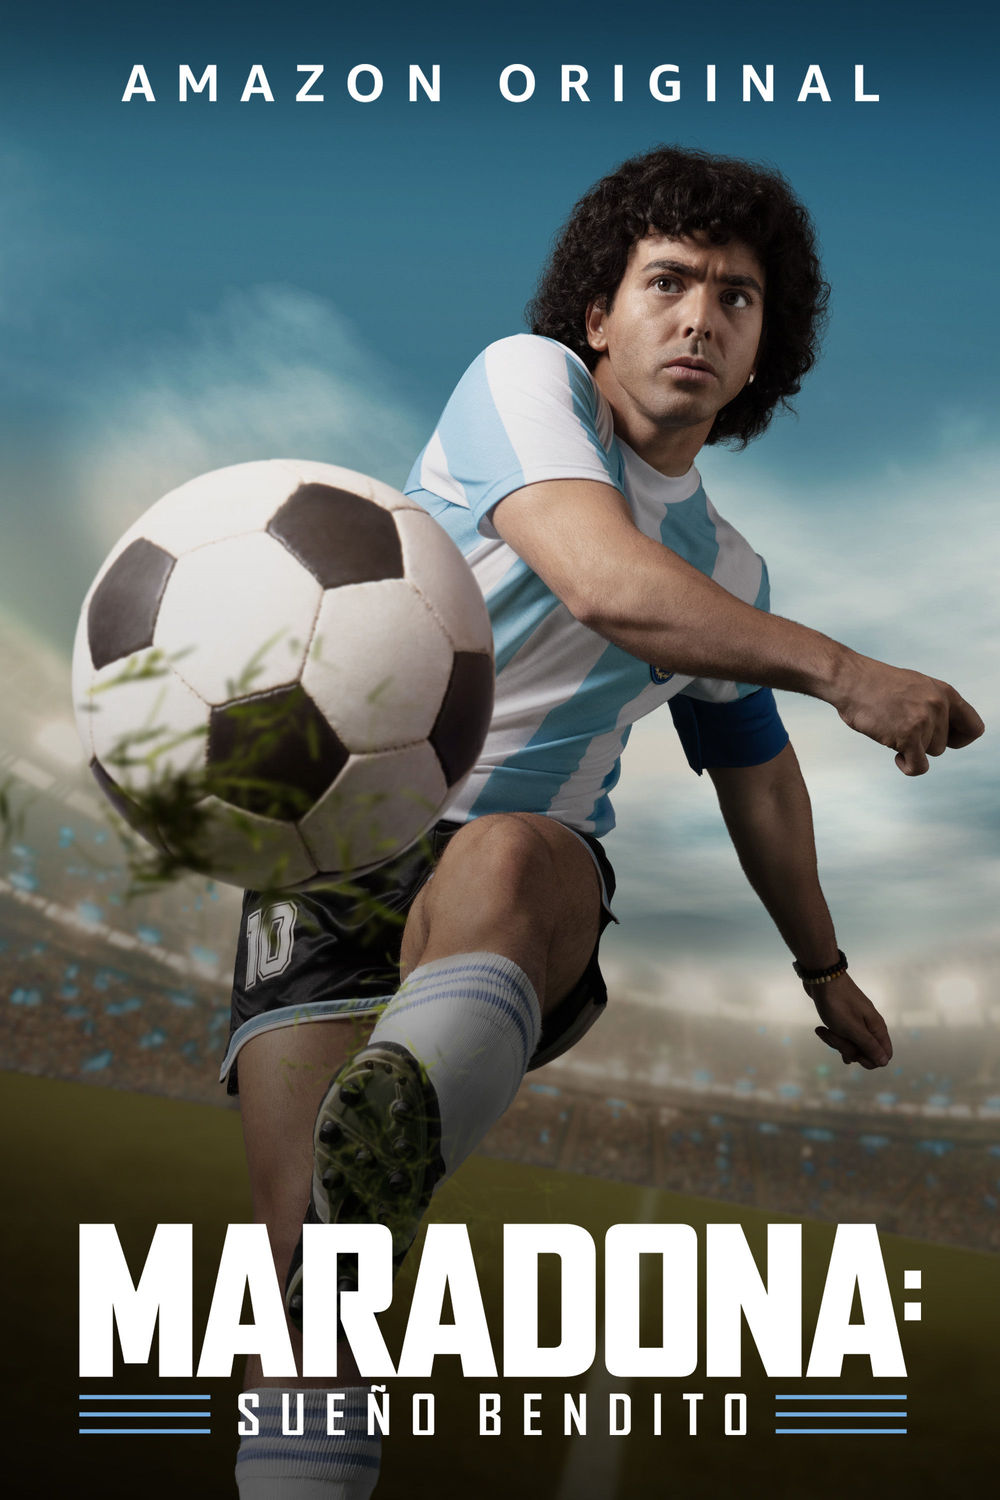 Cartel Maradona: Sueño bendito